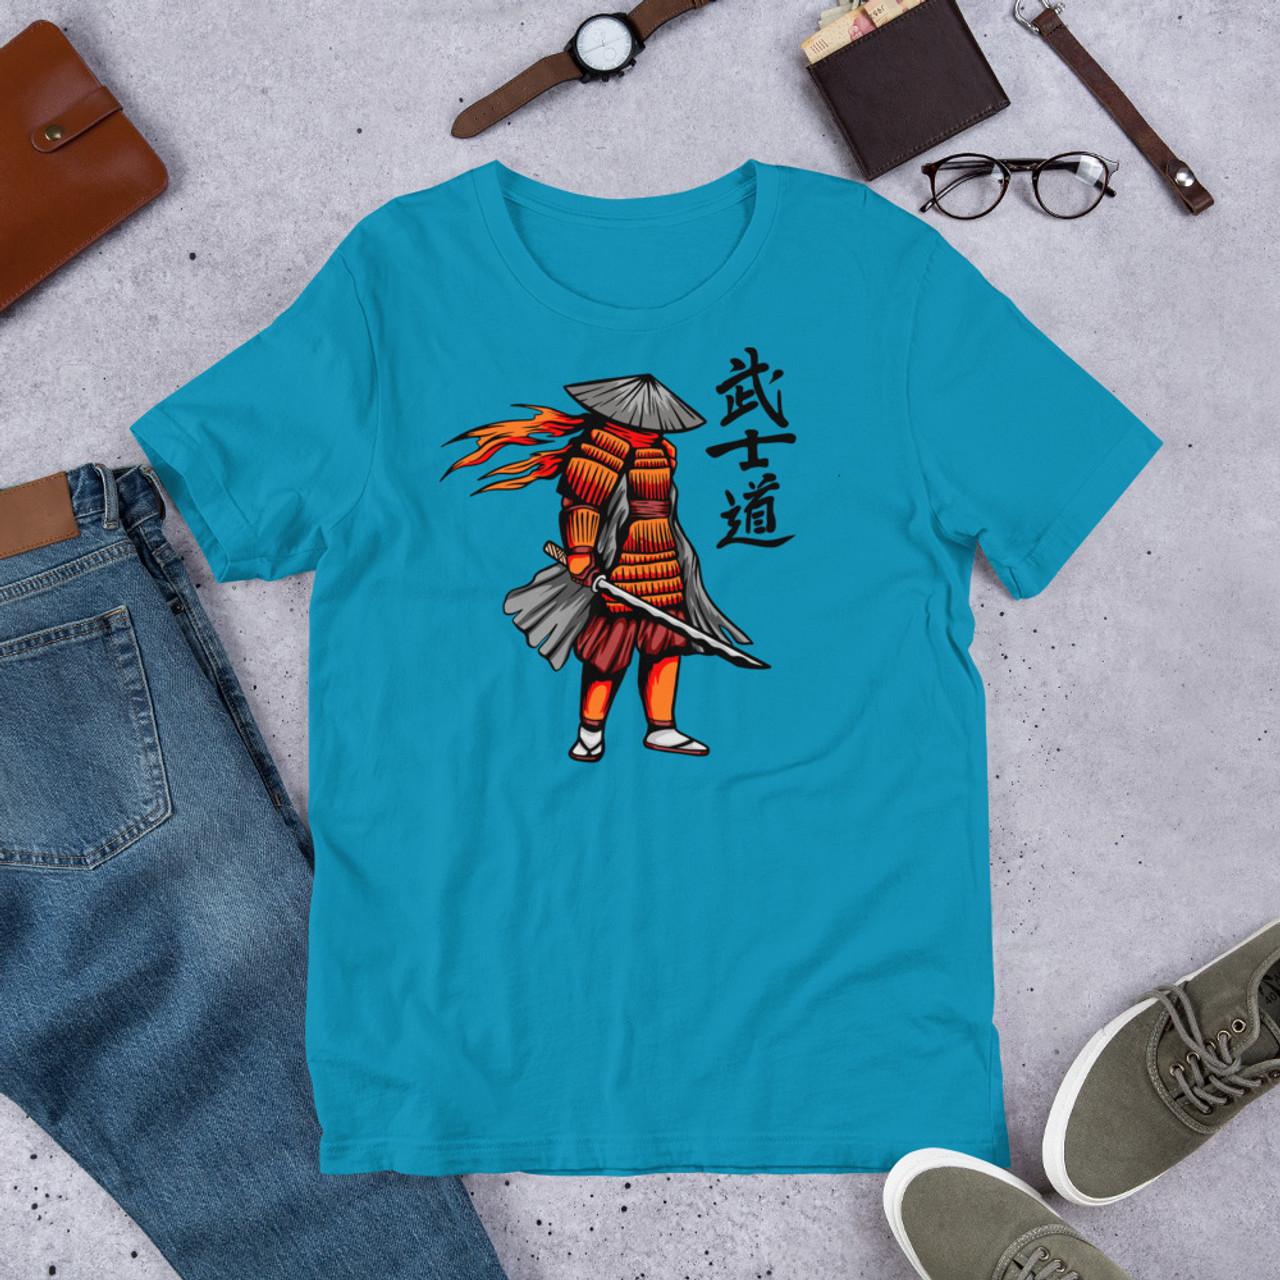 Aqua T-Shirt - Bella + Canvas 3001 Samurai 6